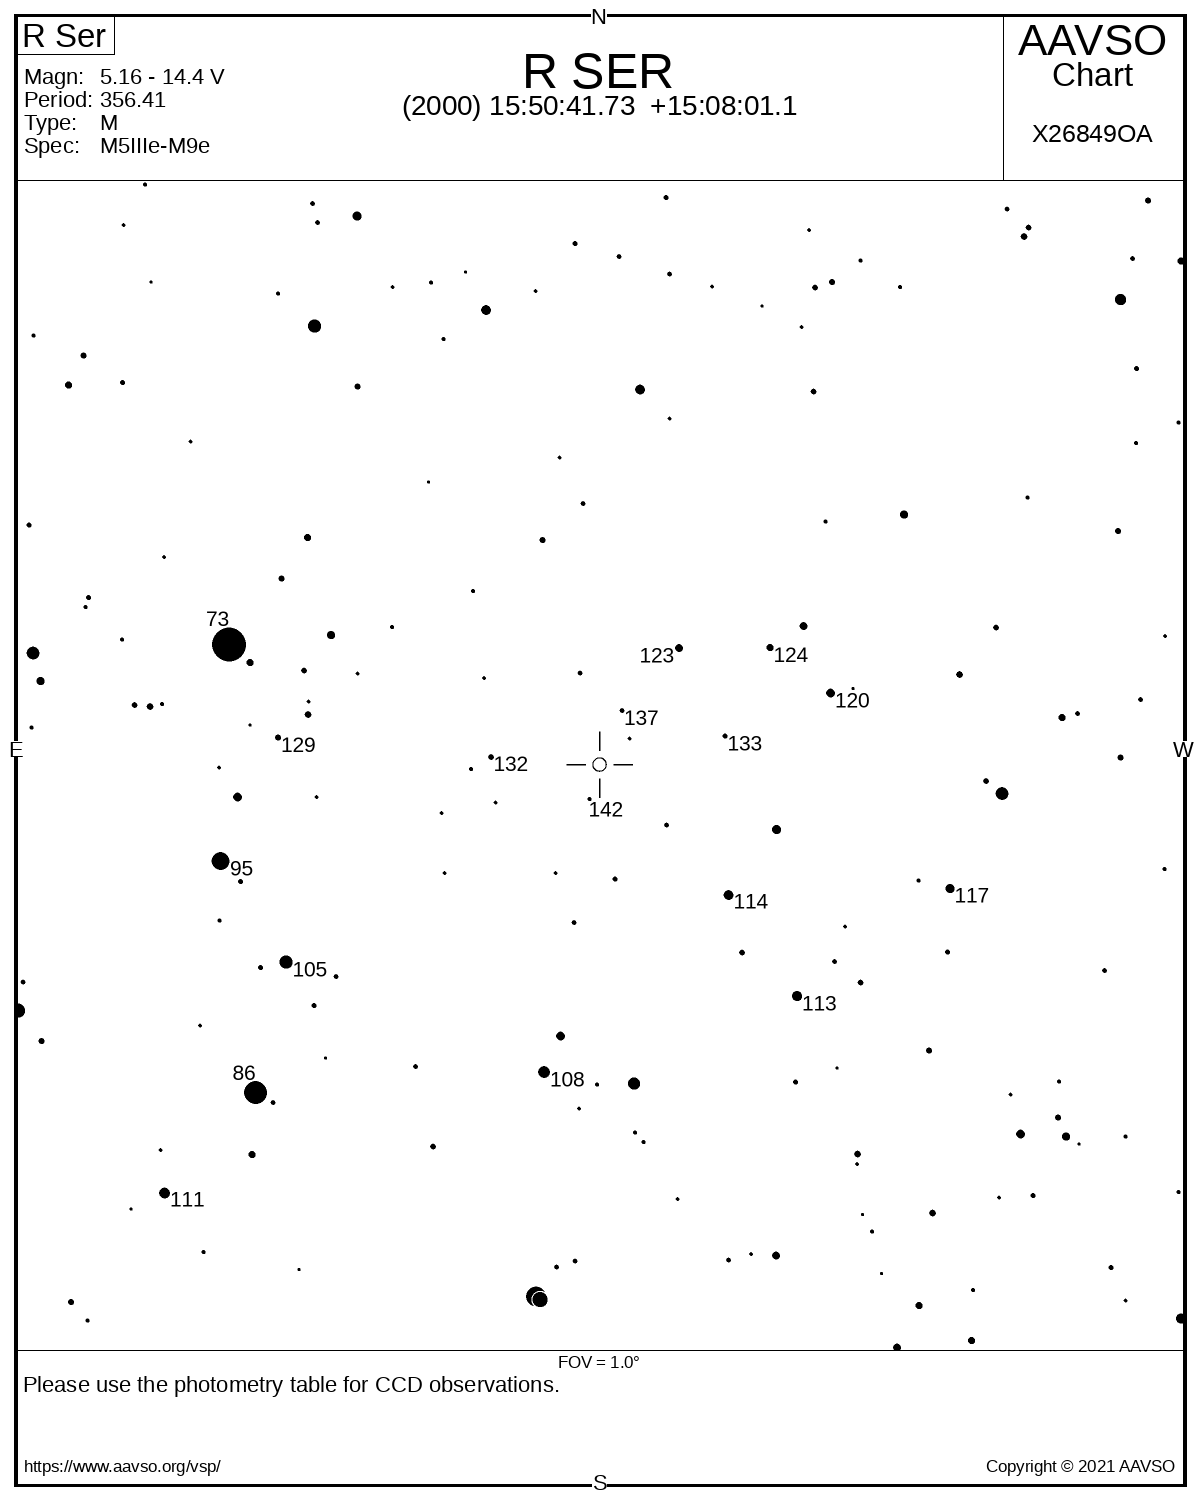 Eine Karte zeigt die Umgebung des  veränderlichen Sterns R Serpentis mit schwarzem Sternen auf weißem Hintergrund. Die Helligkeiten einiger Vergleichssterne sind in Einheiten von Zehntel Magnituden markiert.